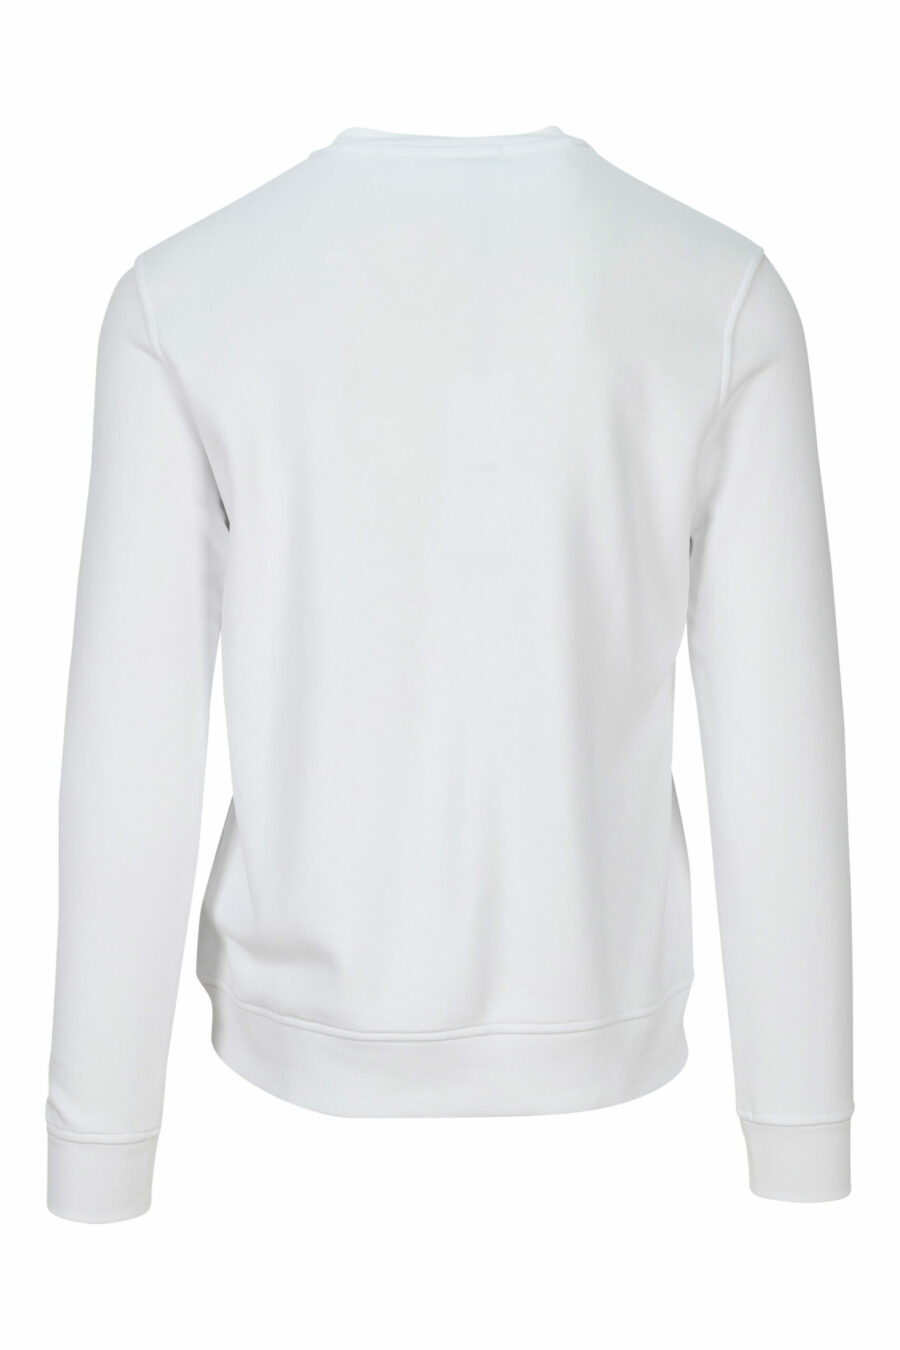 Weißes Sweatshirt mit einfarbigem Gummi-Maxilogo - 4062226393010 1 skaliert